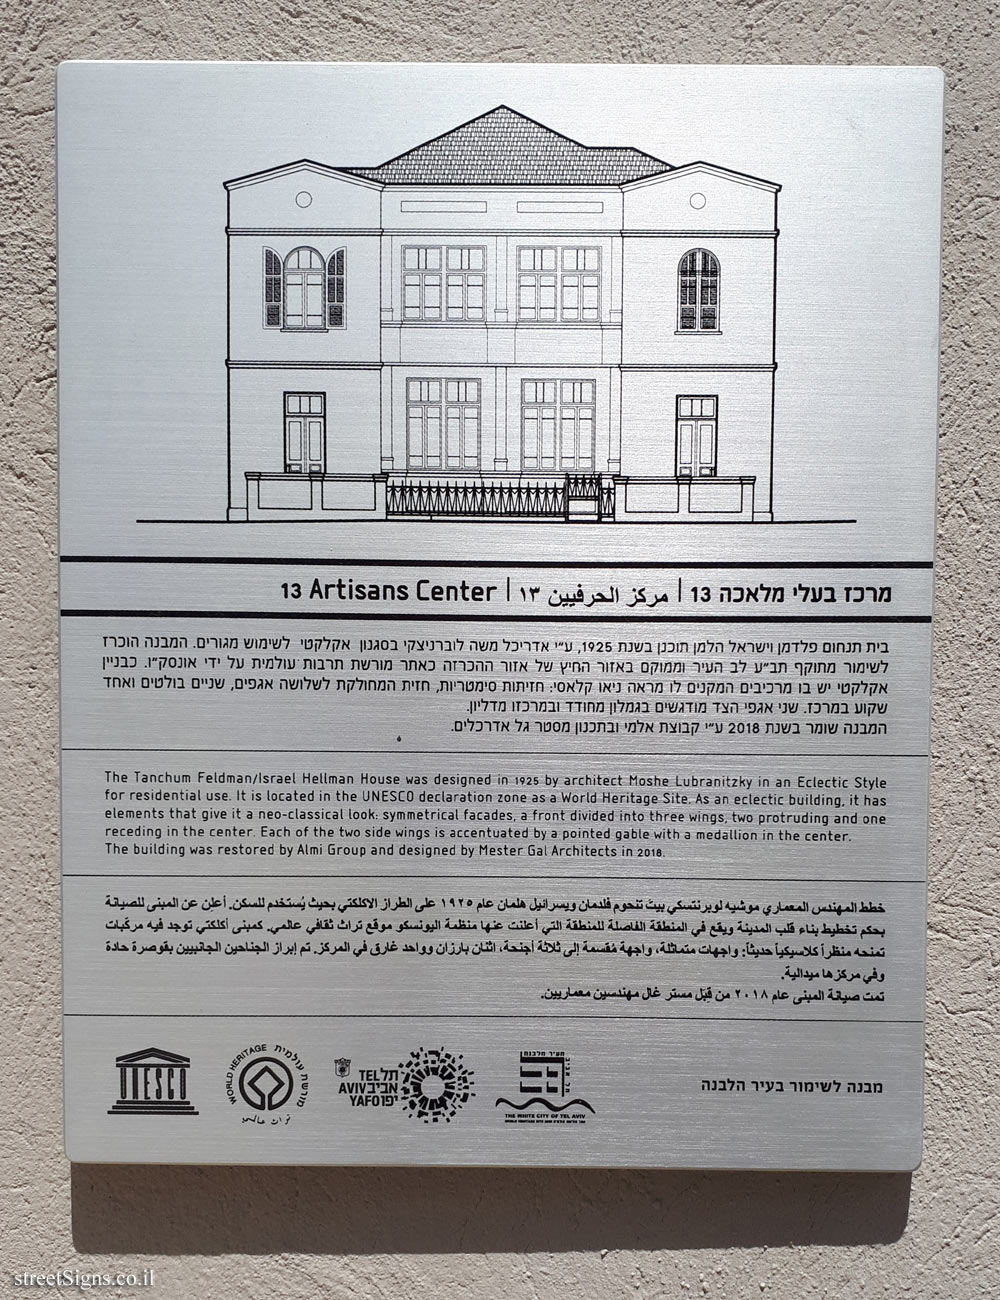 Tel Aviv - buildings for conservation - 13 Artisans Center